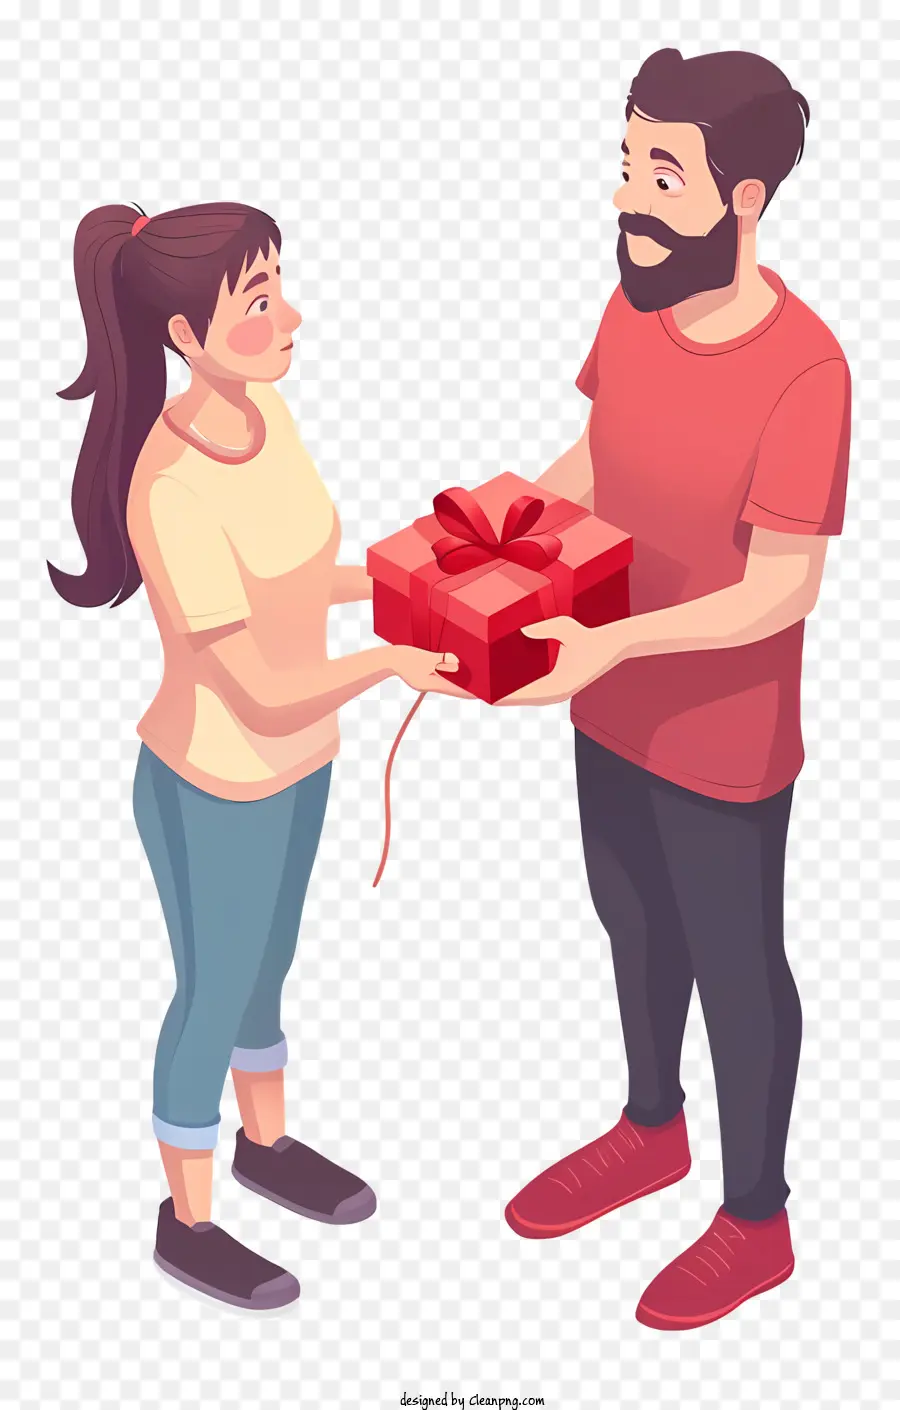 Valentinstag Geschenk für Freund Relevante Schlüsselwörter: Geschenk Überraschung geben rote Box - Mann gibt eine rote Kiste der Frau; 
Beide glücklich. 
Hohe Qualität, gut gemachtes Bild